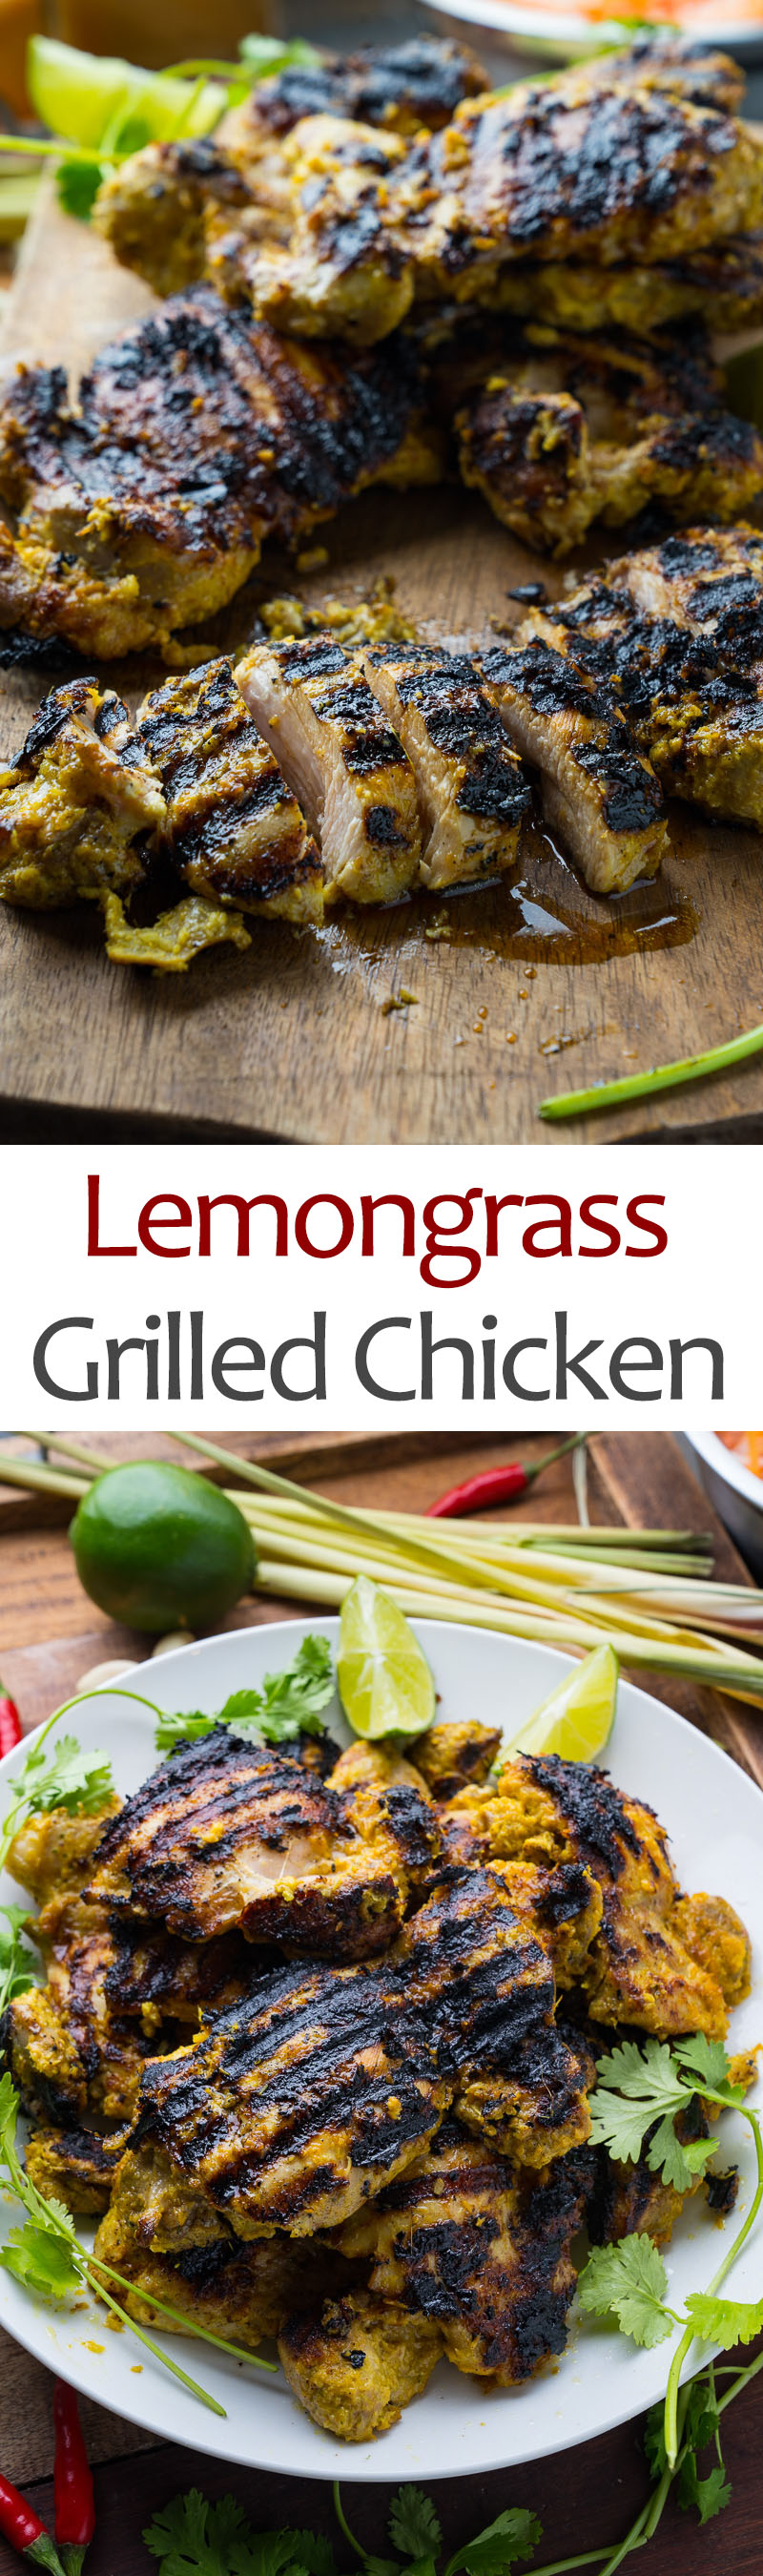 Lemongrass Grilled Chicken